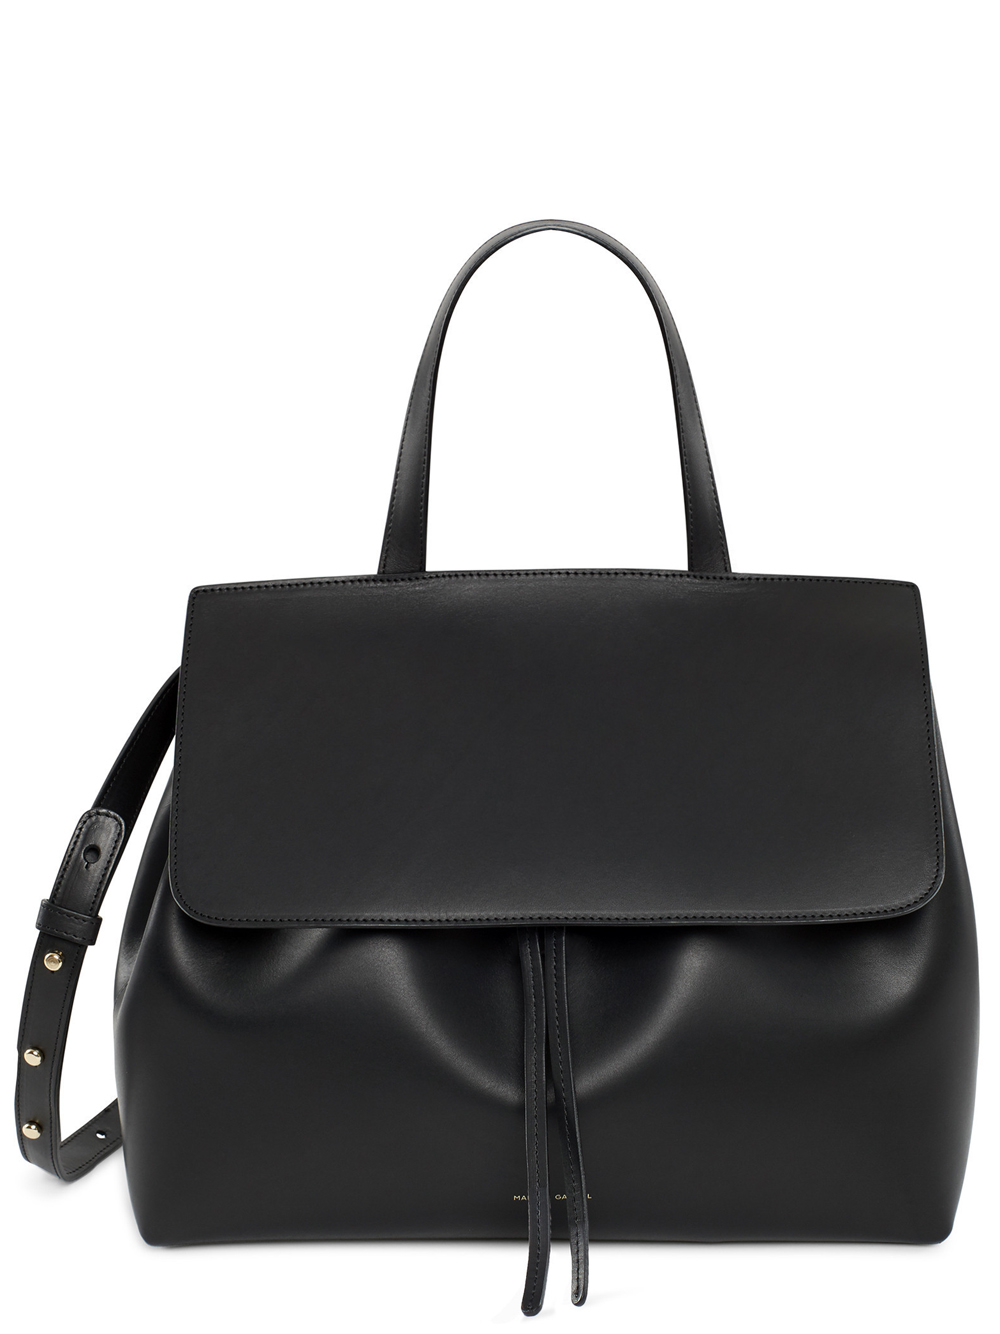 Mansur gavriel Lady Leather Shoulder Bag in Black | Lyst